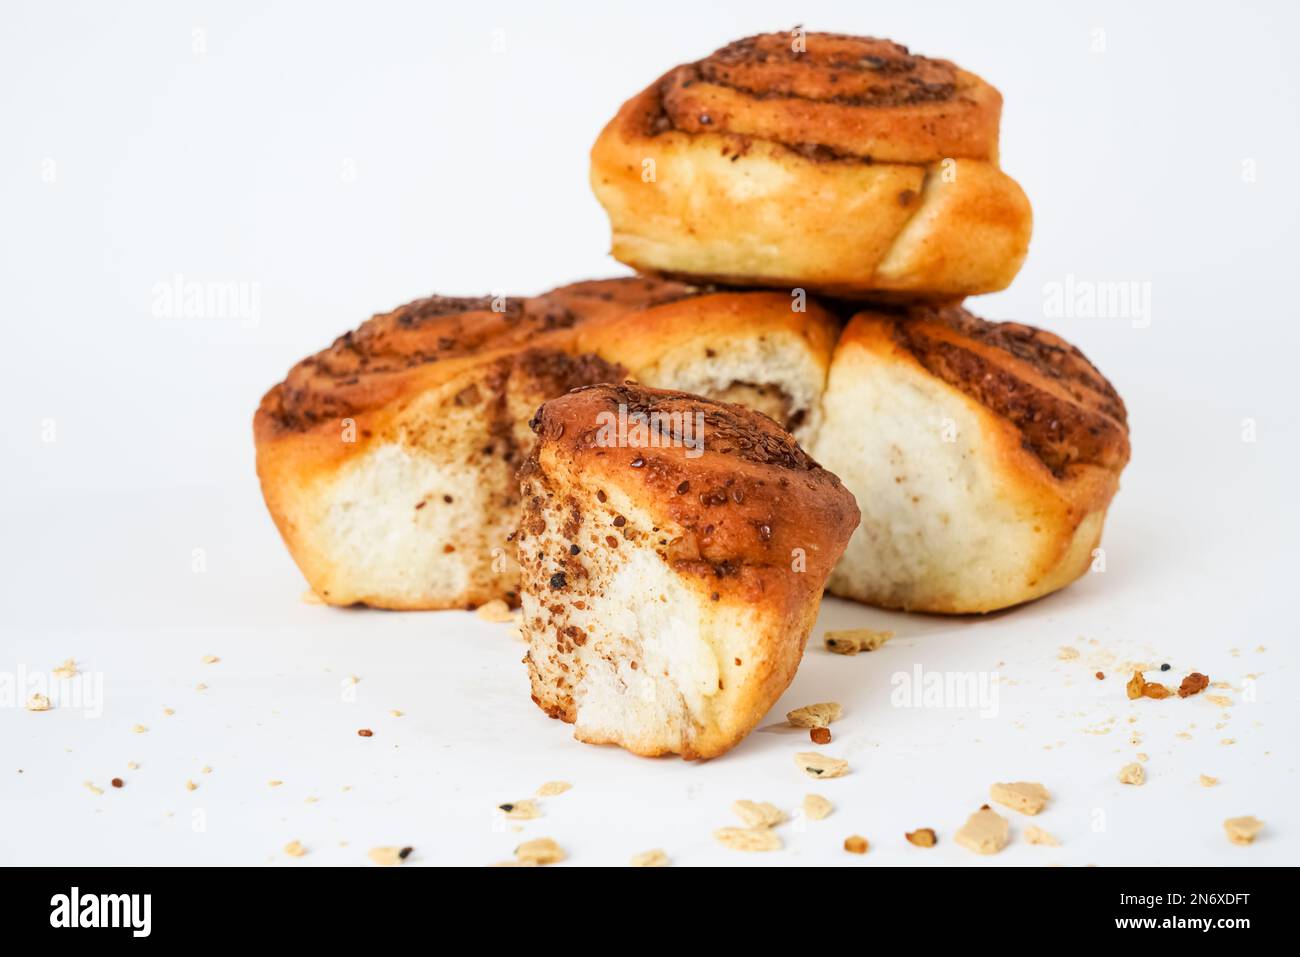 Pane salato con sesamo di papavero noce isolato su fondo bianco. Si chiama lokum localmente in turchia. Foto Stock